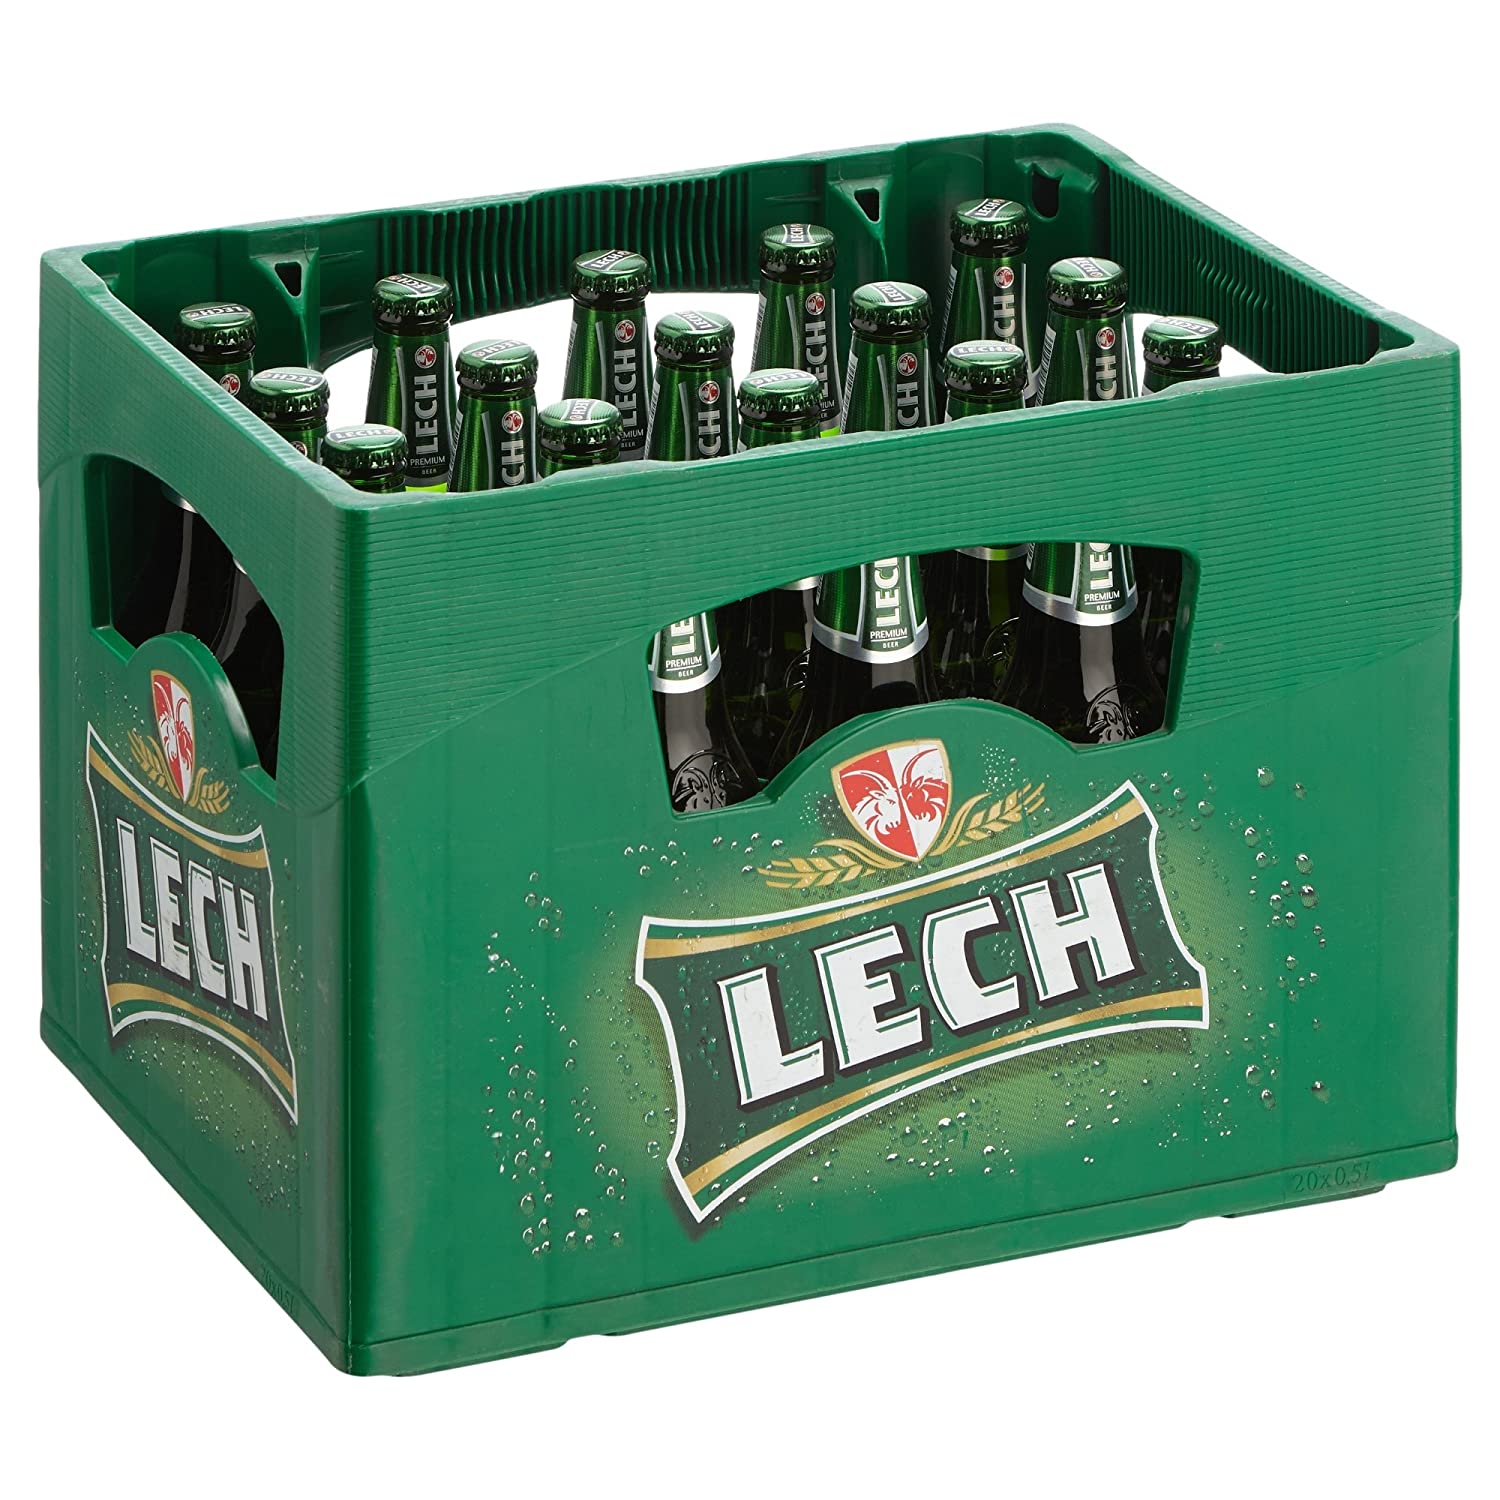 Lech Premium Pils 0,5l- aus Polen mit 5,2% Vol.